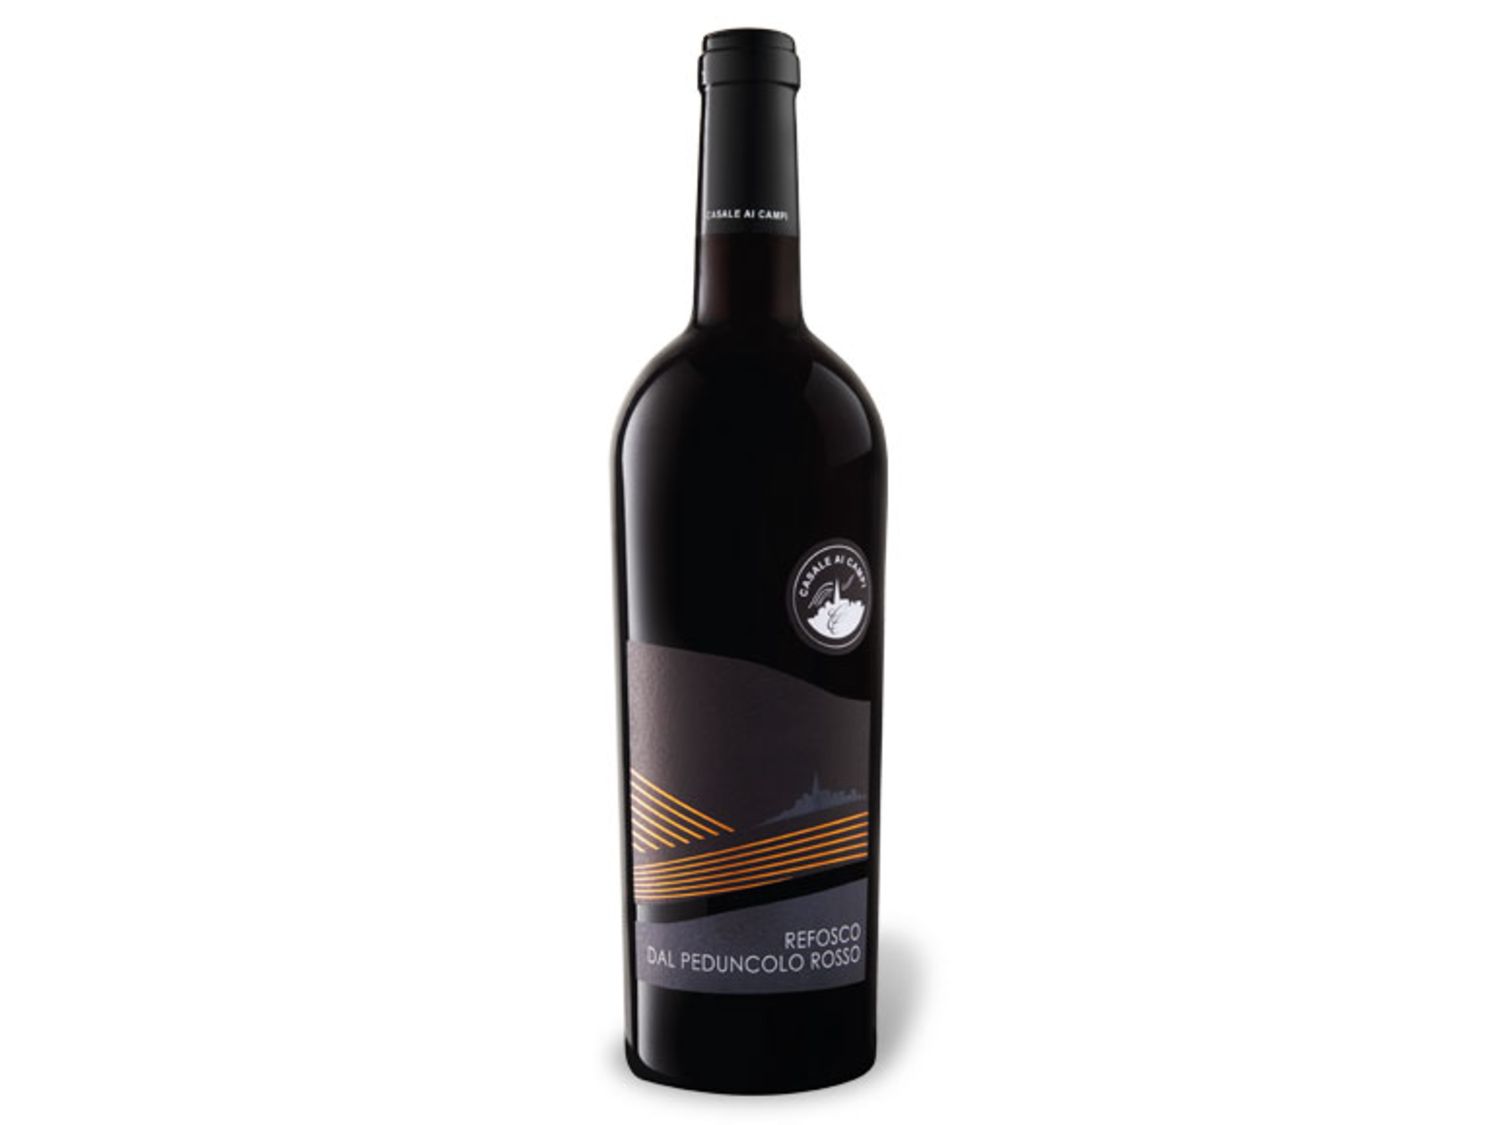 Rotwein, Italien, Friaul, Refosco kaufen | Günstig im Preisvergleich